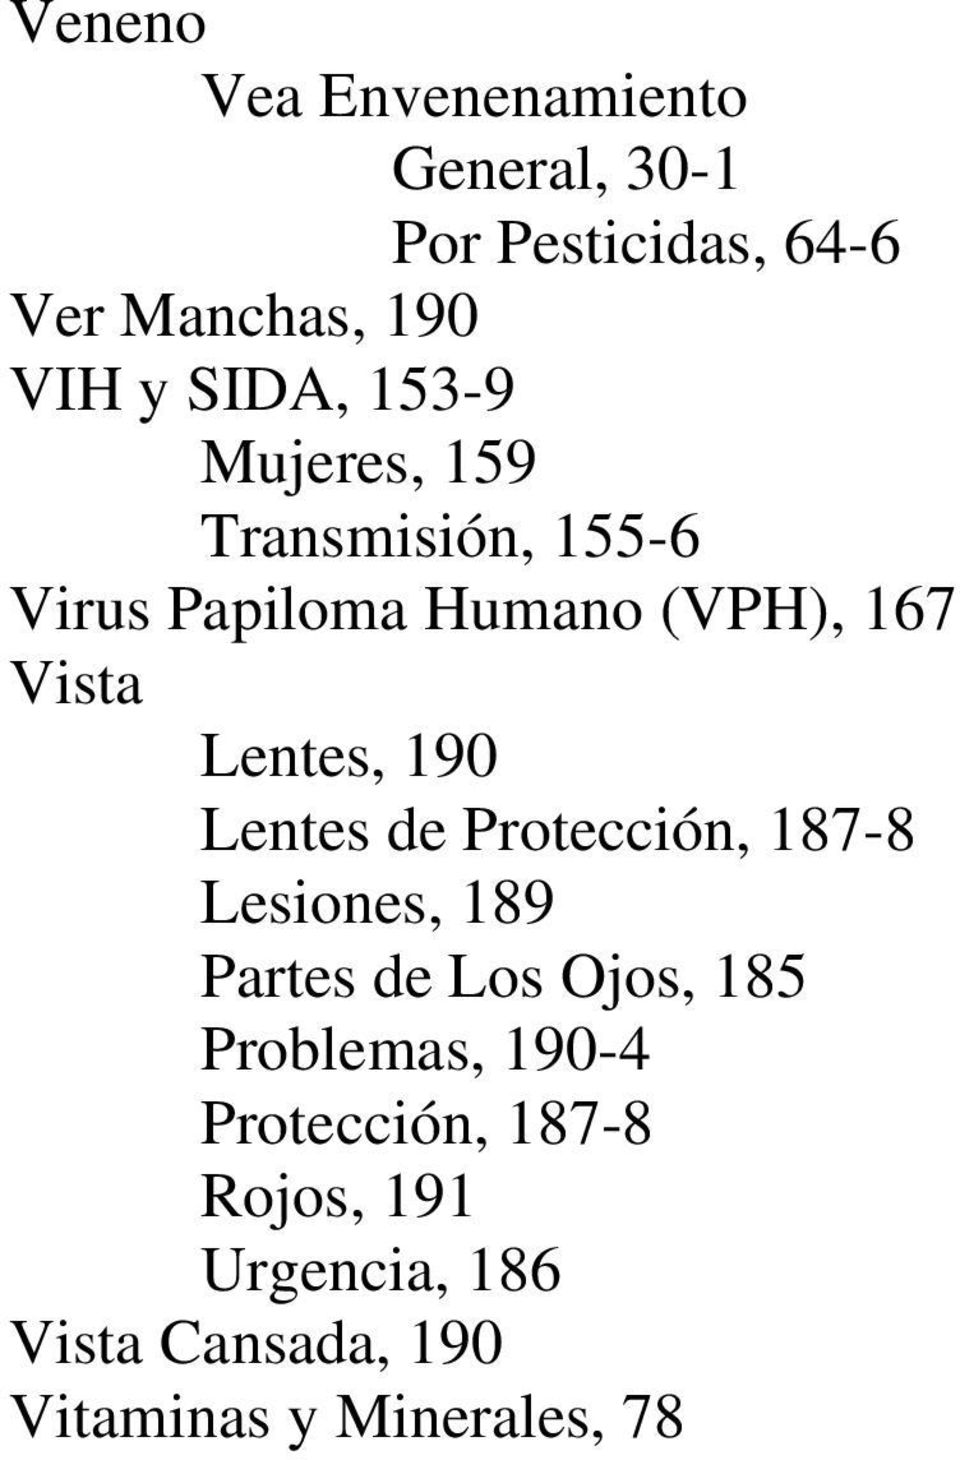 Humano (VPH), 167 Vista Lentes, 190 Lesiones, 189 Problemas, 190-4